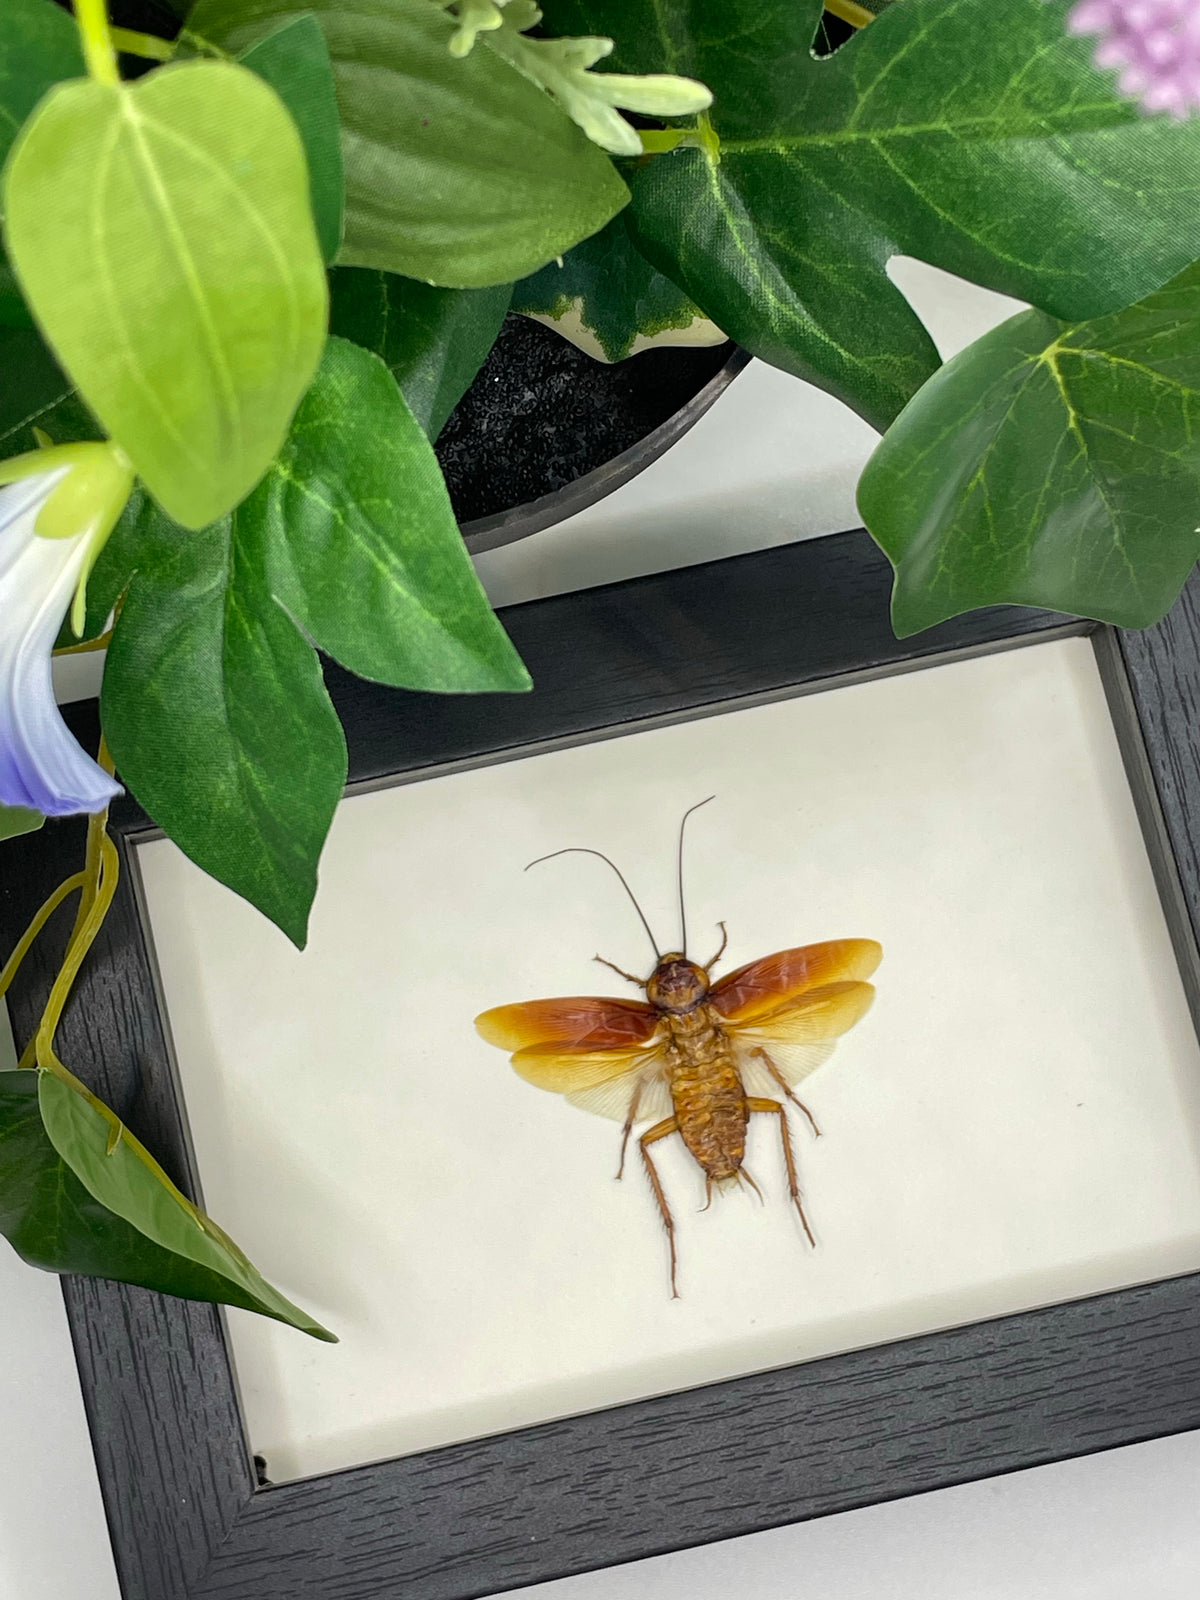 Australian Cockroach in a frame